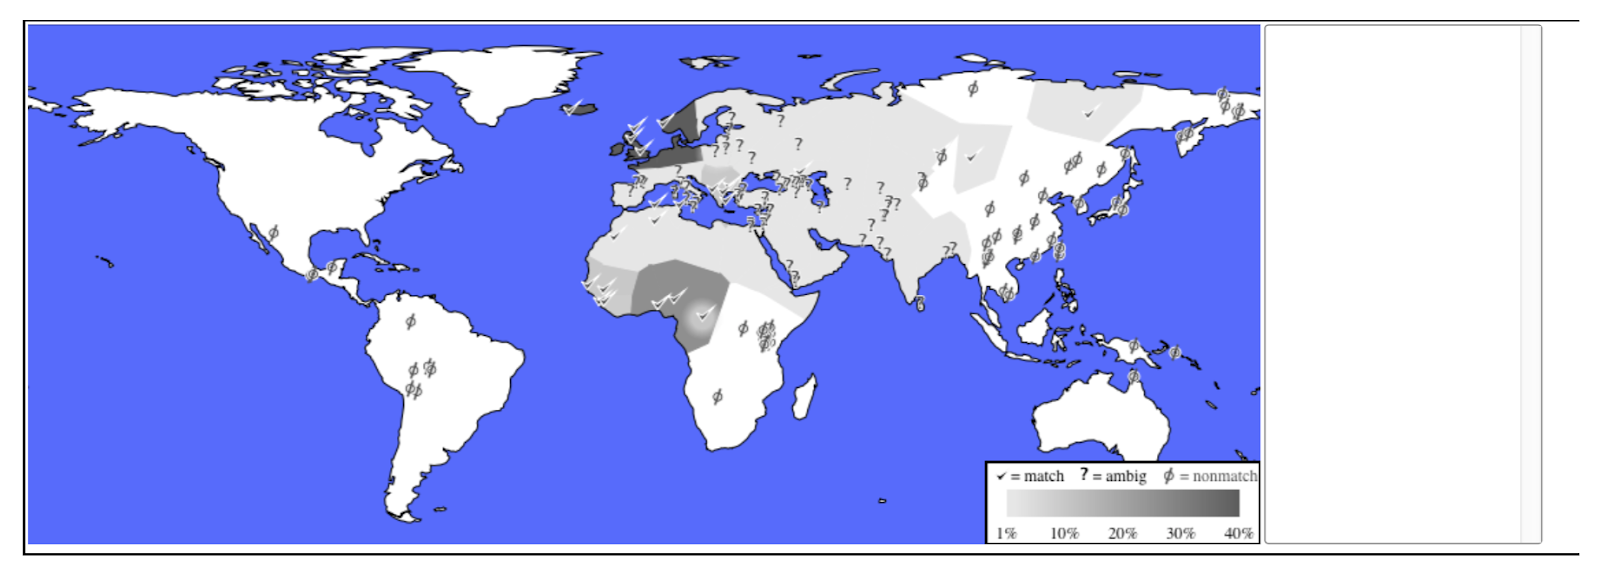 Higo. 1c: Porcentaje de las poblaciones étnicas emparejadas en todo el mundo.